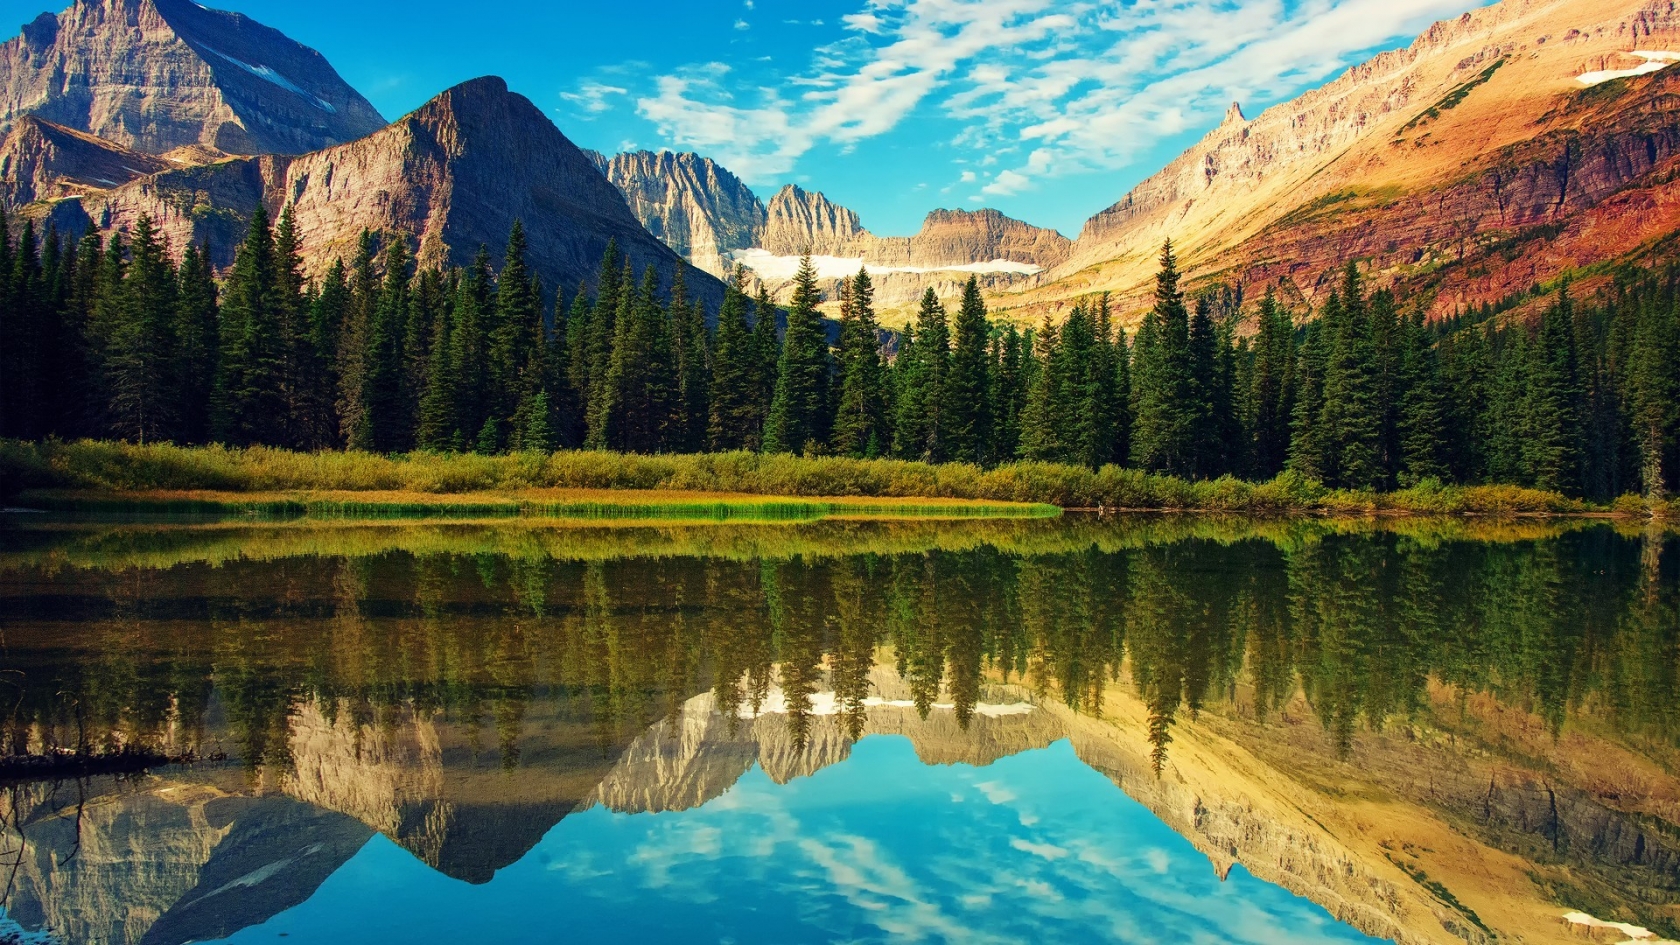 Glacier National Park Landscape for 1680 x 945 HDTV resolution